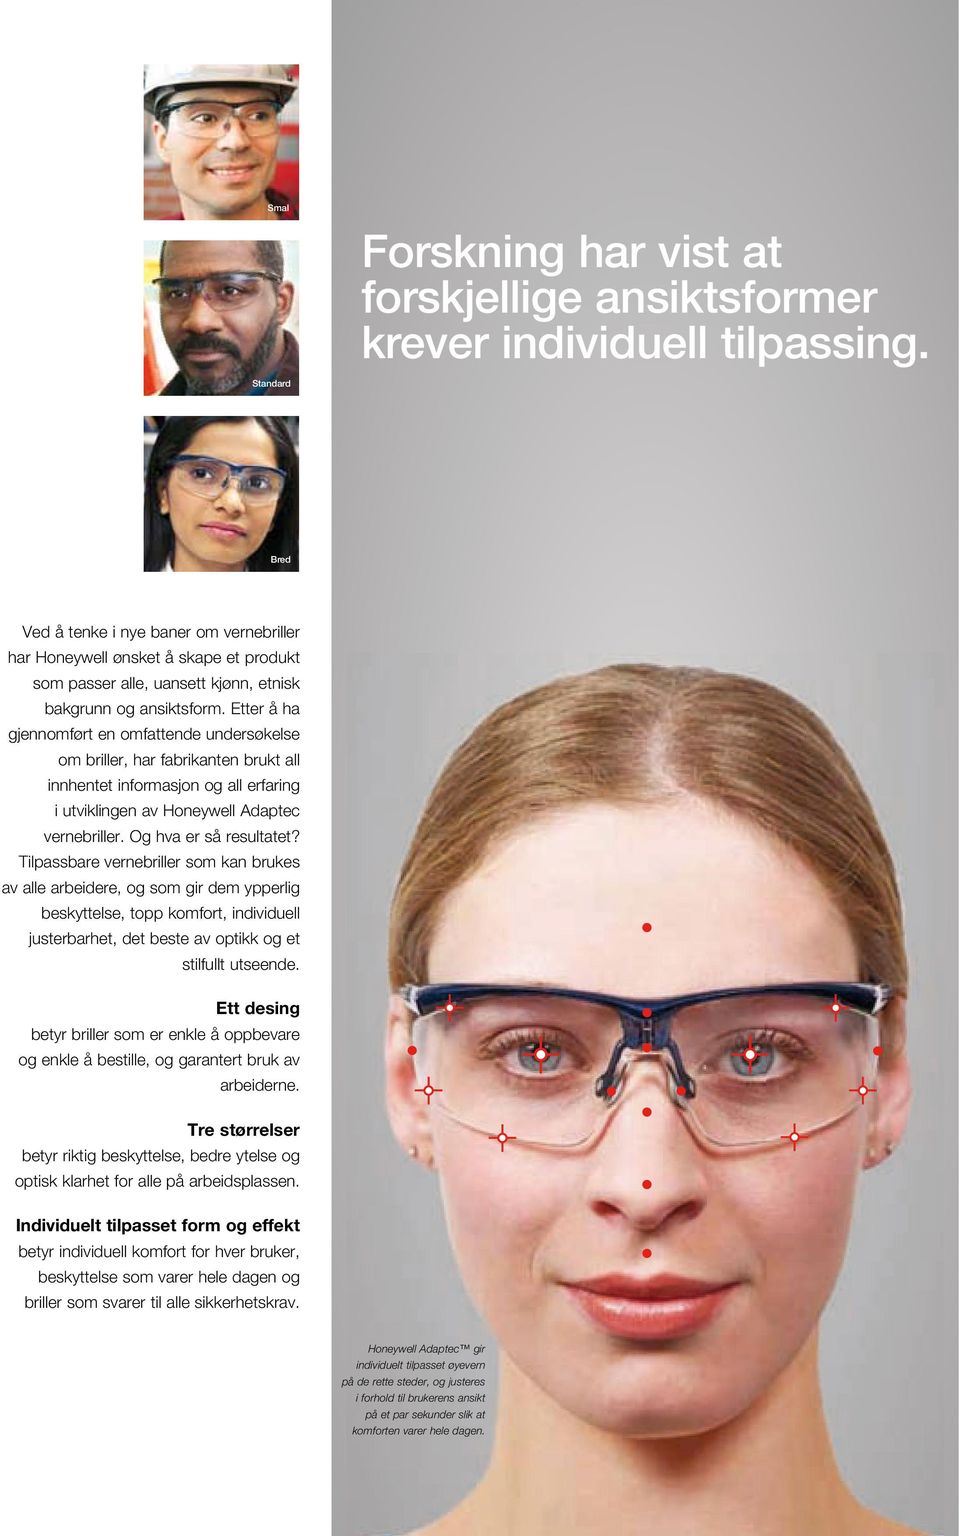 Etter å ha gjennomført en omfattende undersøkelse om briller, har fabrikanten brukt all innhentet informasjon og all erfaring i utviklingen av Honeywell Adaptec vernebriller. Og hva er så resultatet?